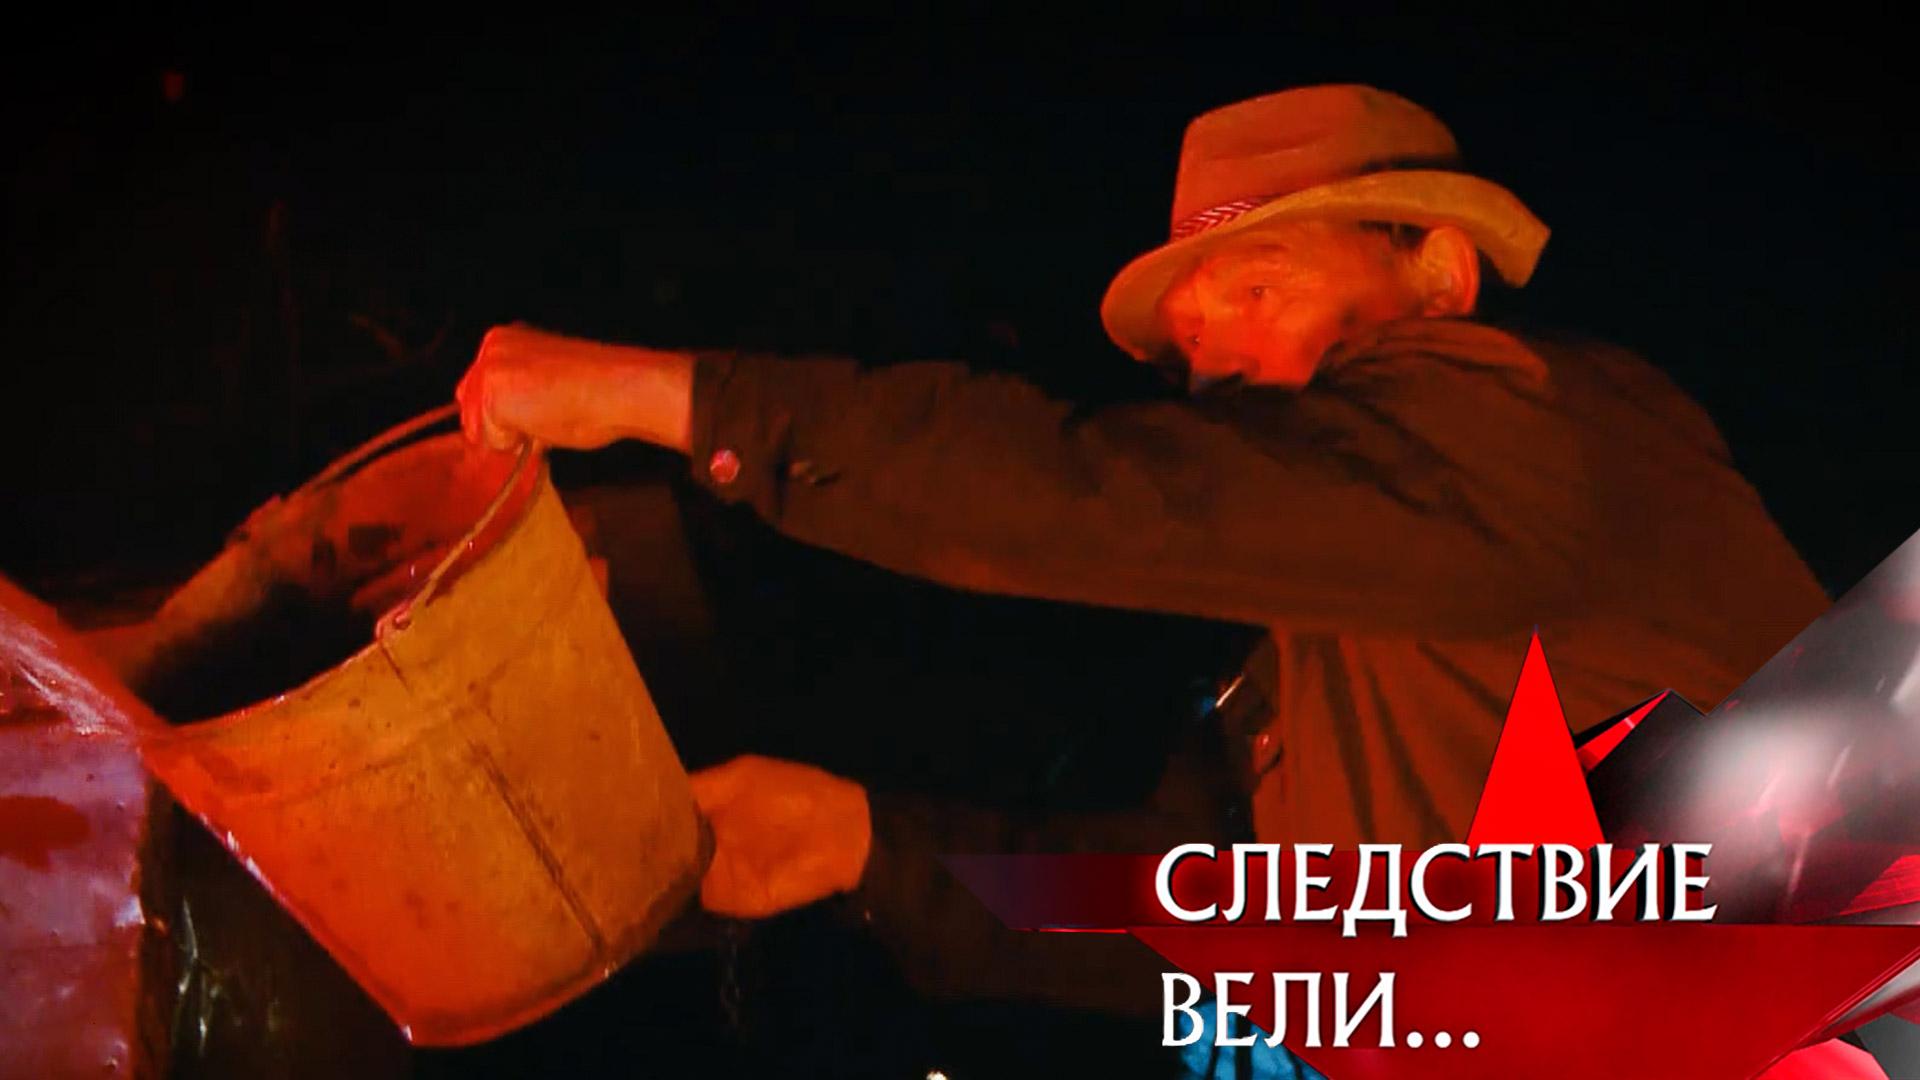 «Адское пламя» | Фильм из цикла «Следствие вели...» с Леонидом Каневским